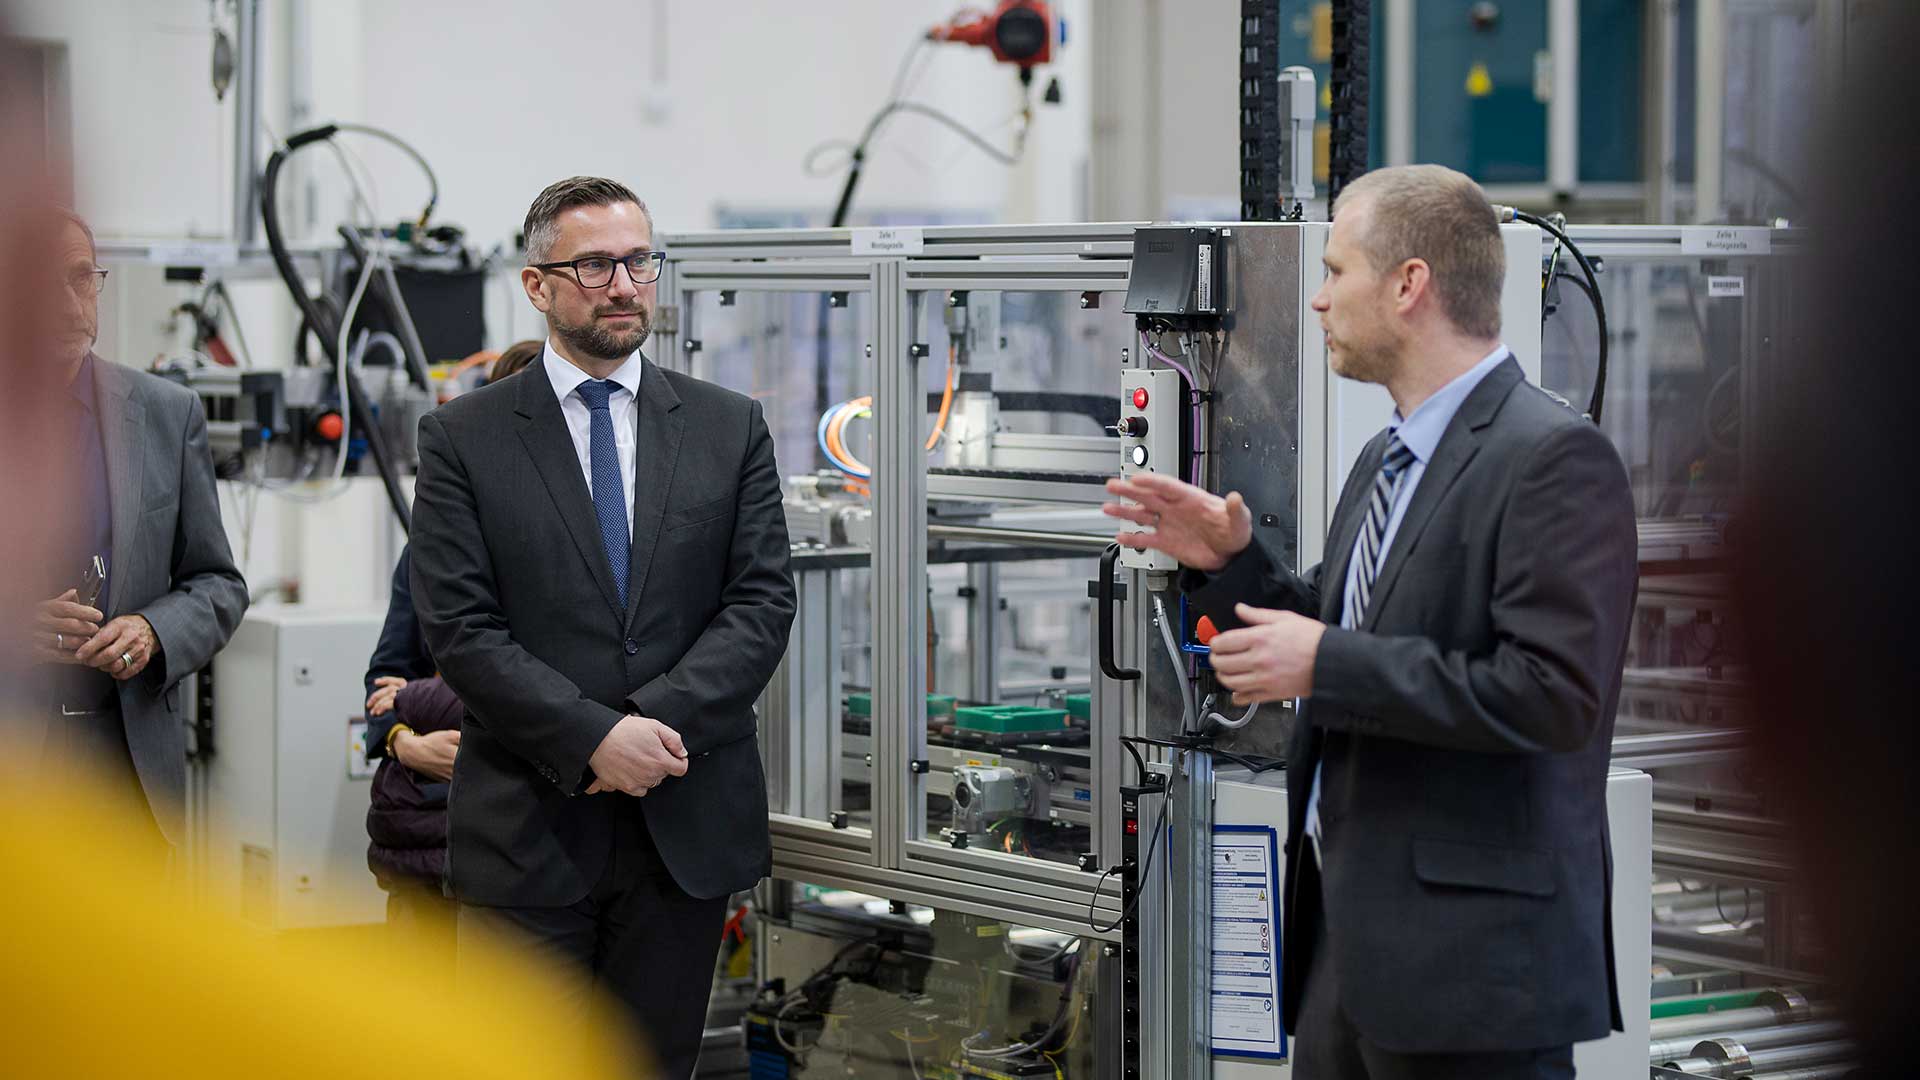 Kabinettsitzung an der TU Chemnitz mit Führung durch die Experimentier- und Digitalfabrik || © Pawel Sosnowski